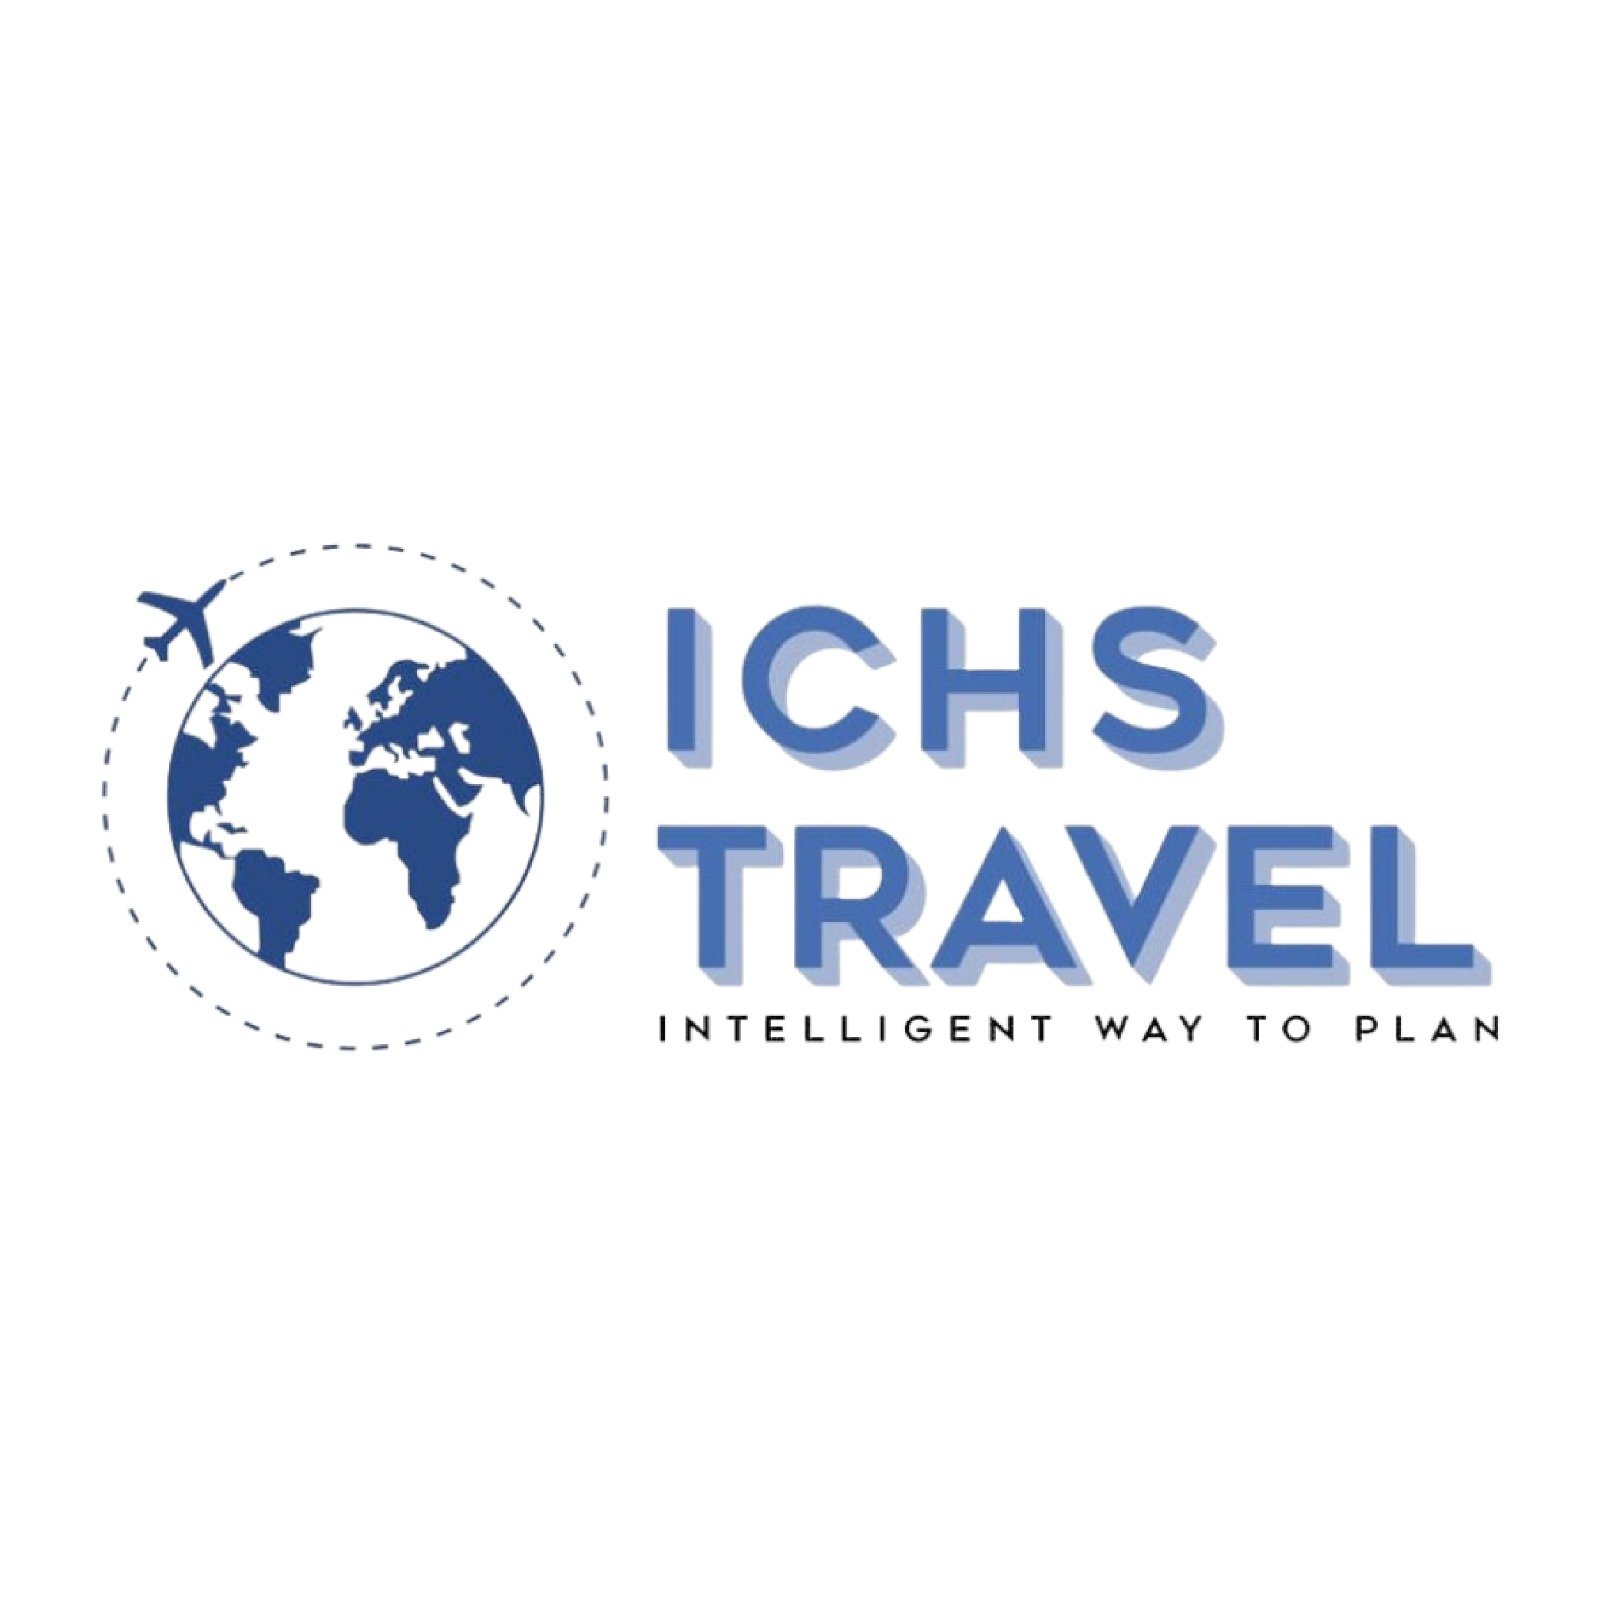 ICHS Travel